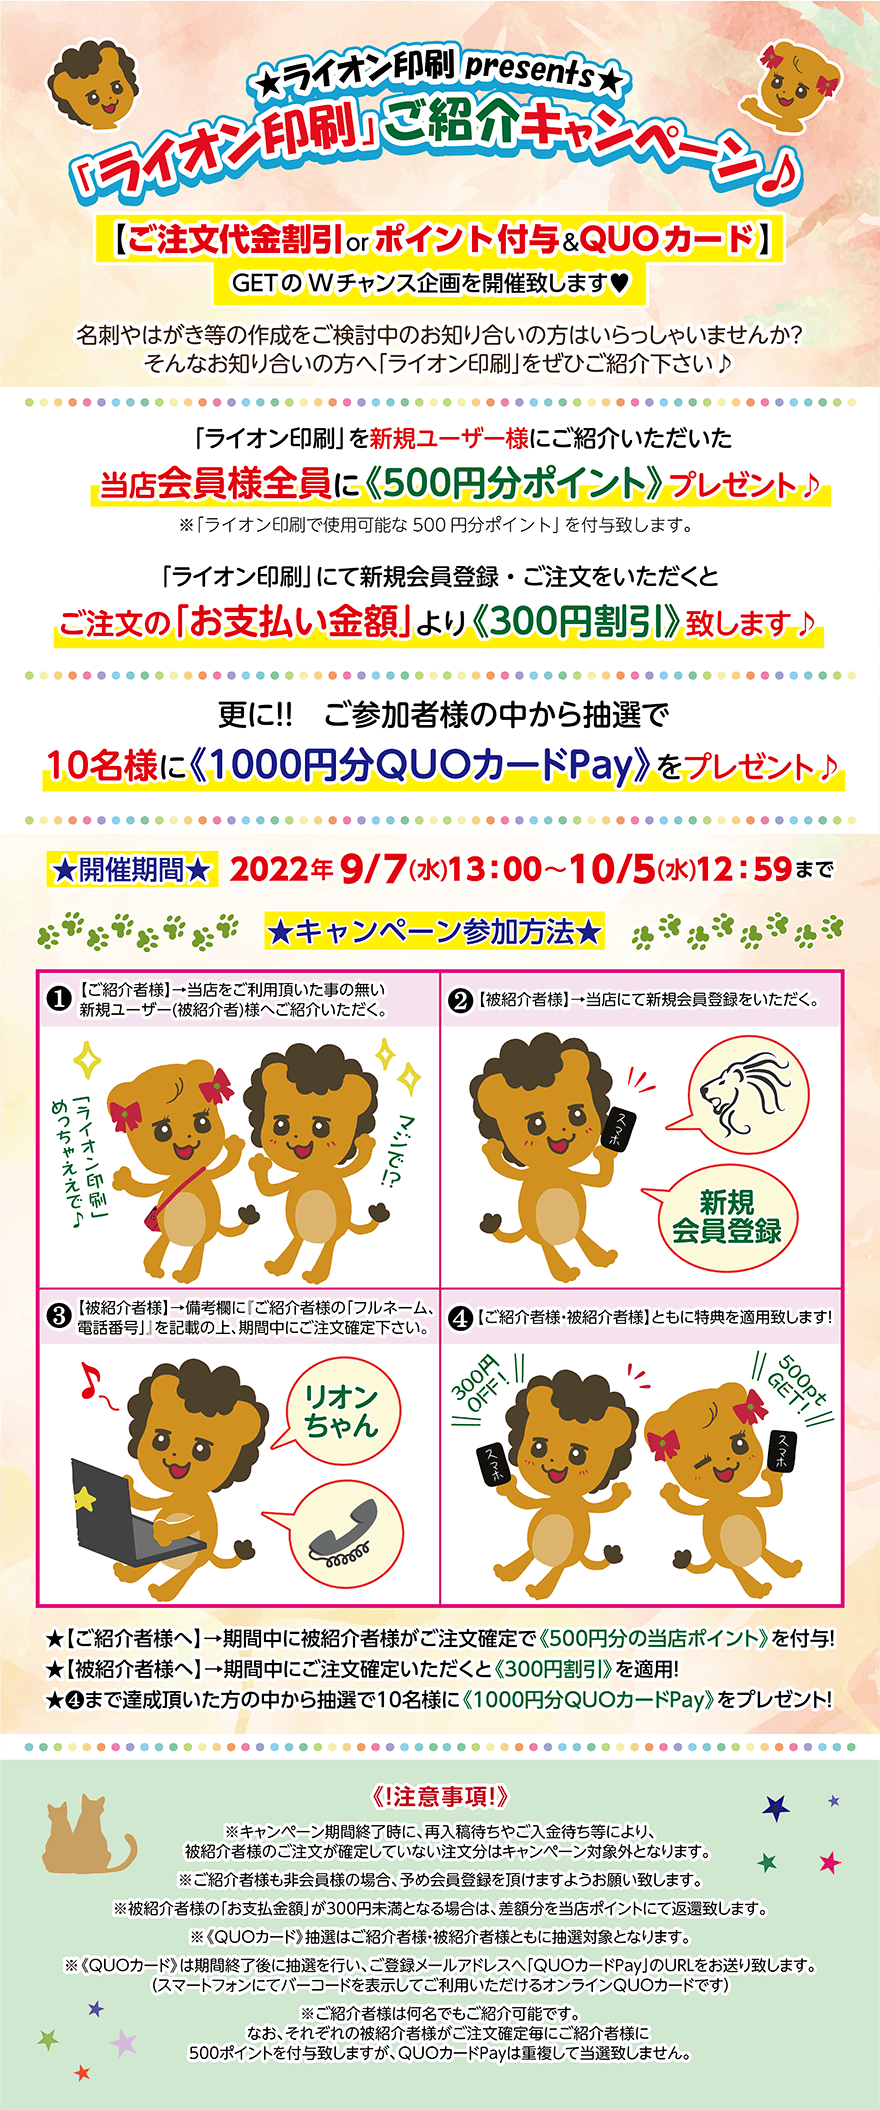 「ライオン印刷」ご紹介キャンペーン